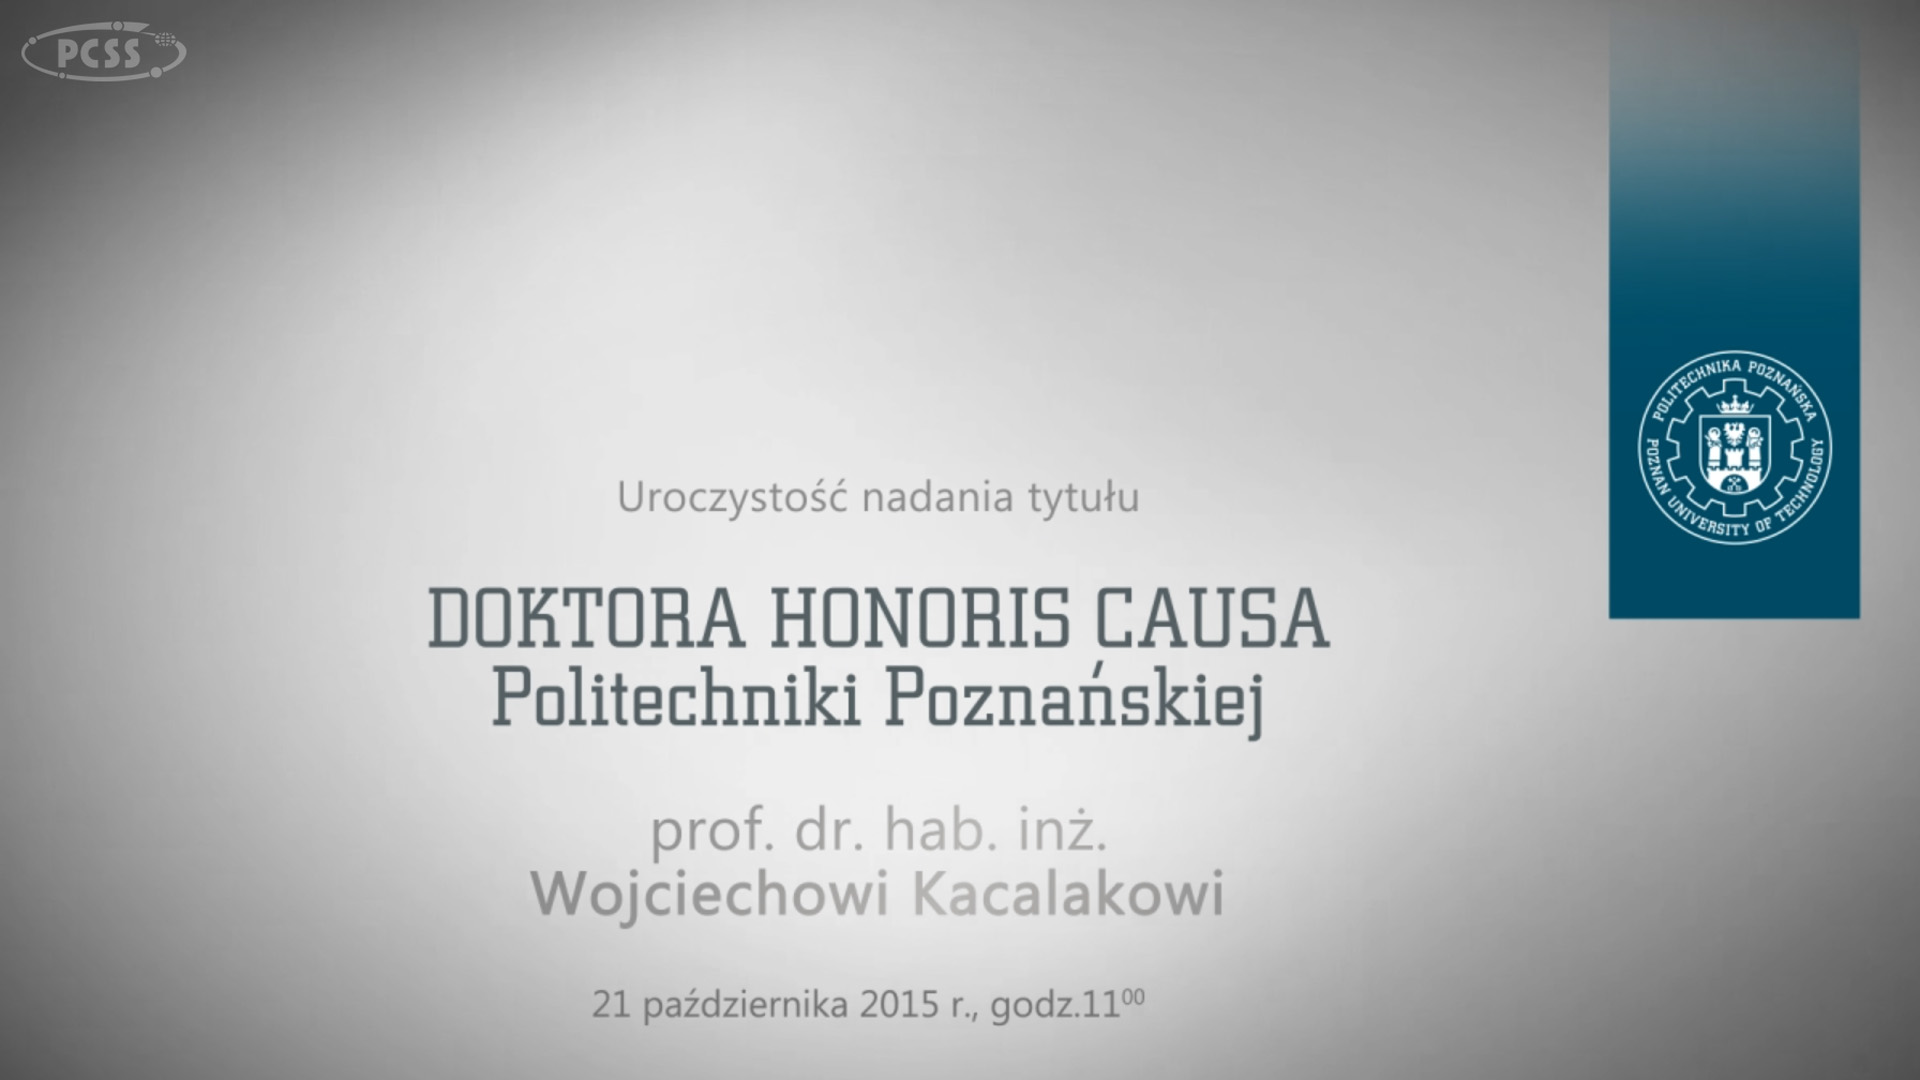 PlatonTV: Uroczystość nadania tytułu doktora honoris causa profesorowi Wojciechowi Kacalakowi